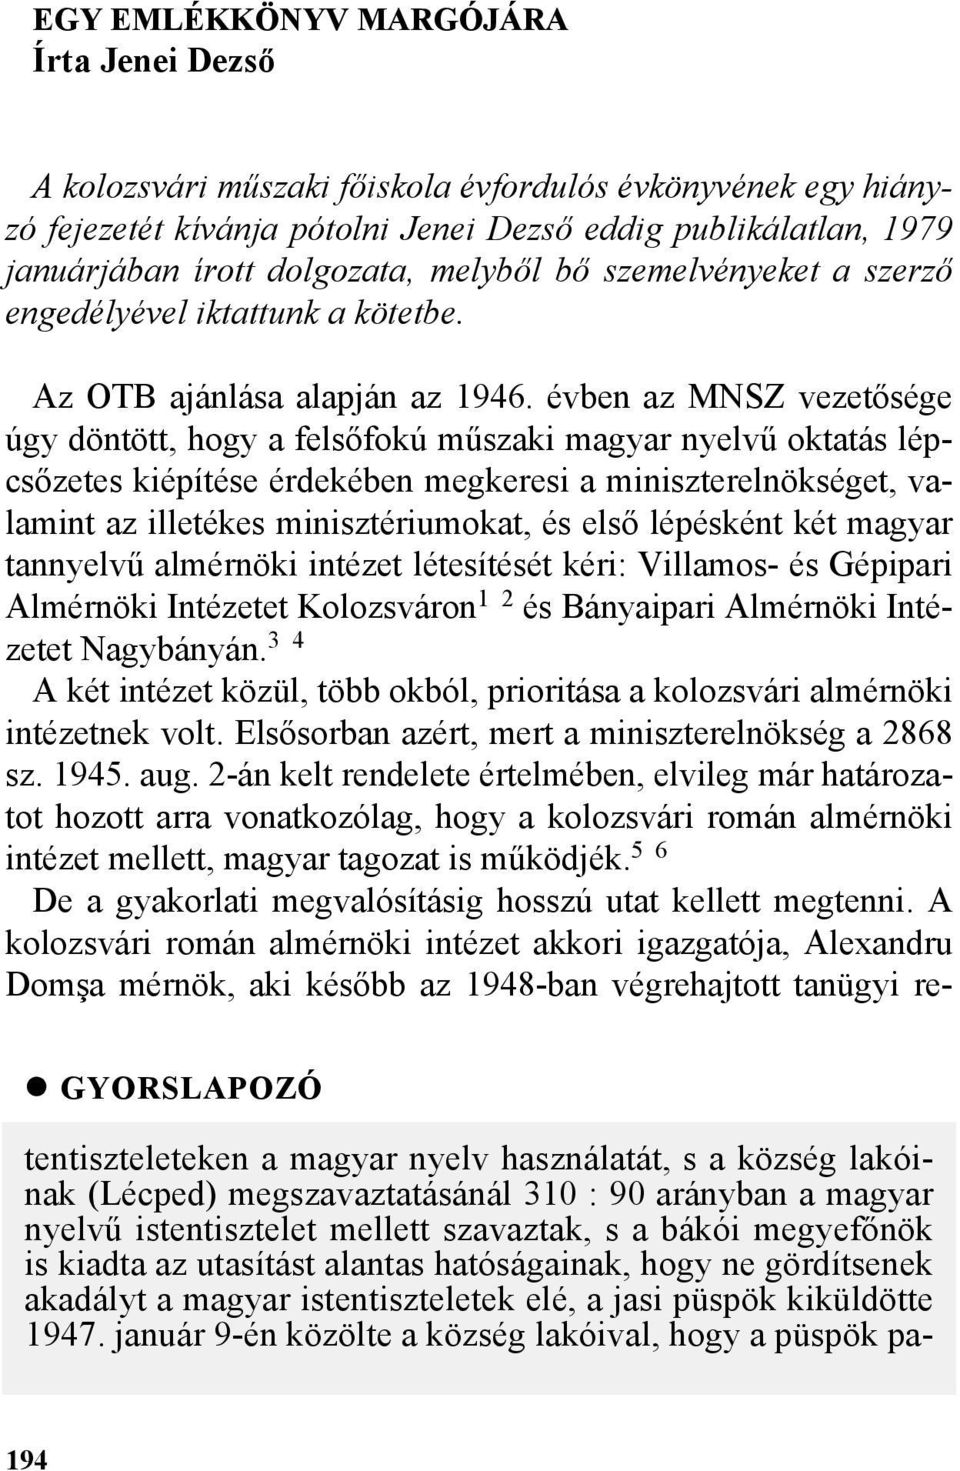 évben az MNSZ vezetõsége úgy döntött, hogy a felsõfokú mûszaki magyar nyelvû oktatás lépcsõzetes kiépítése érdekében megkeresi a miniszterelnökséget, valamint az illetékes minisztériumokat, és elsõ